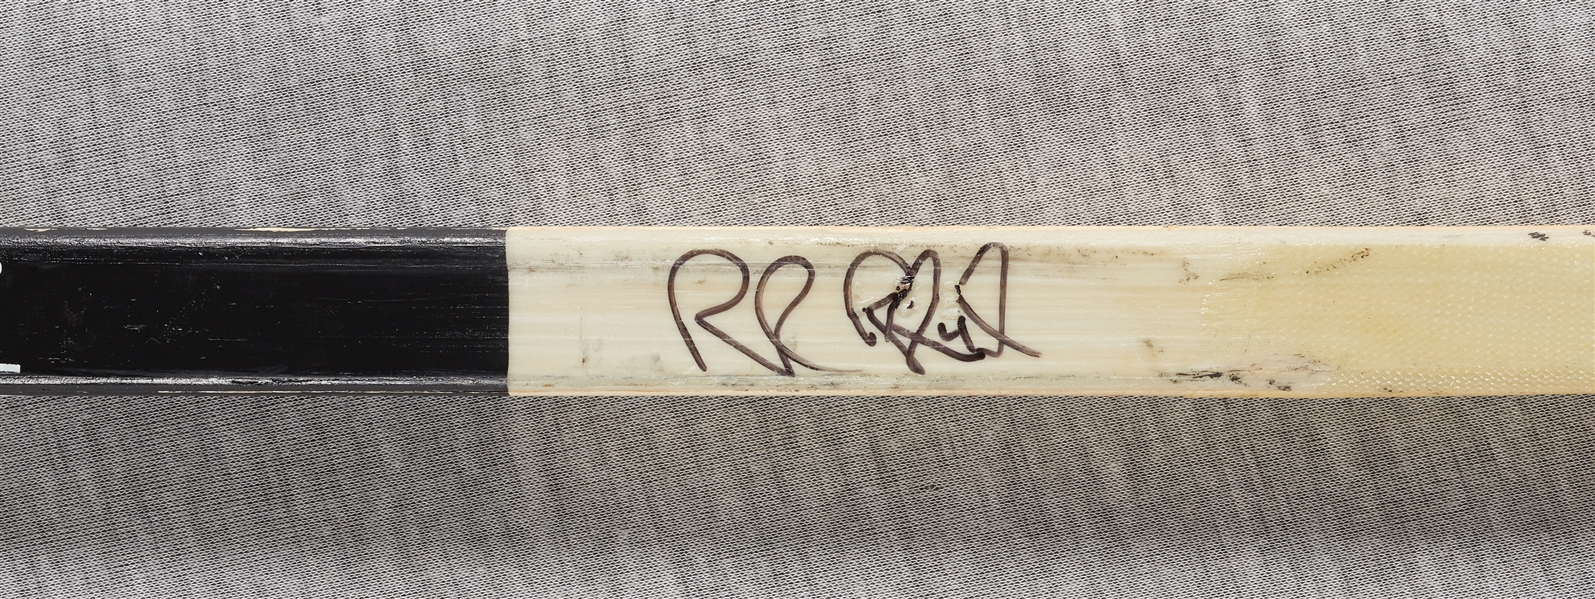 Rob Blake Signed & Game-Used Koho Hockey Stick (BAS)